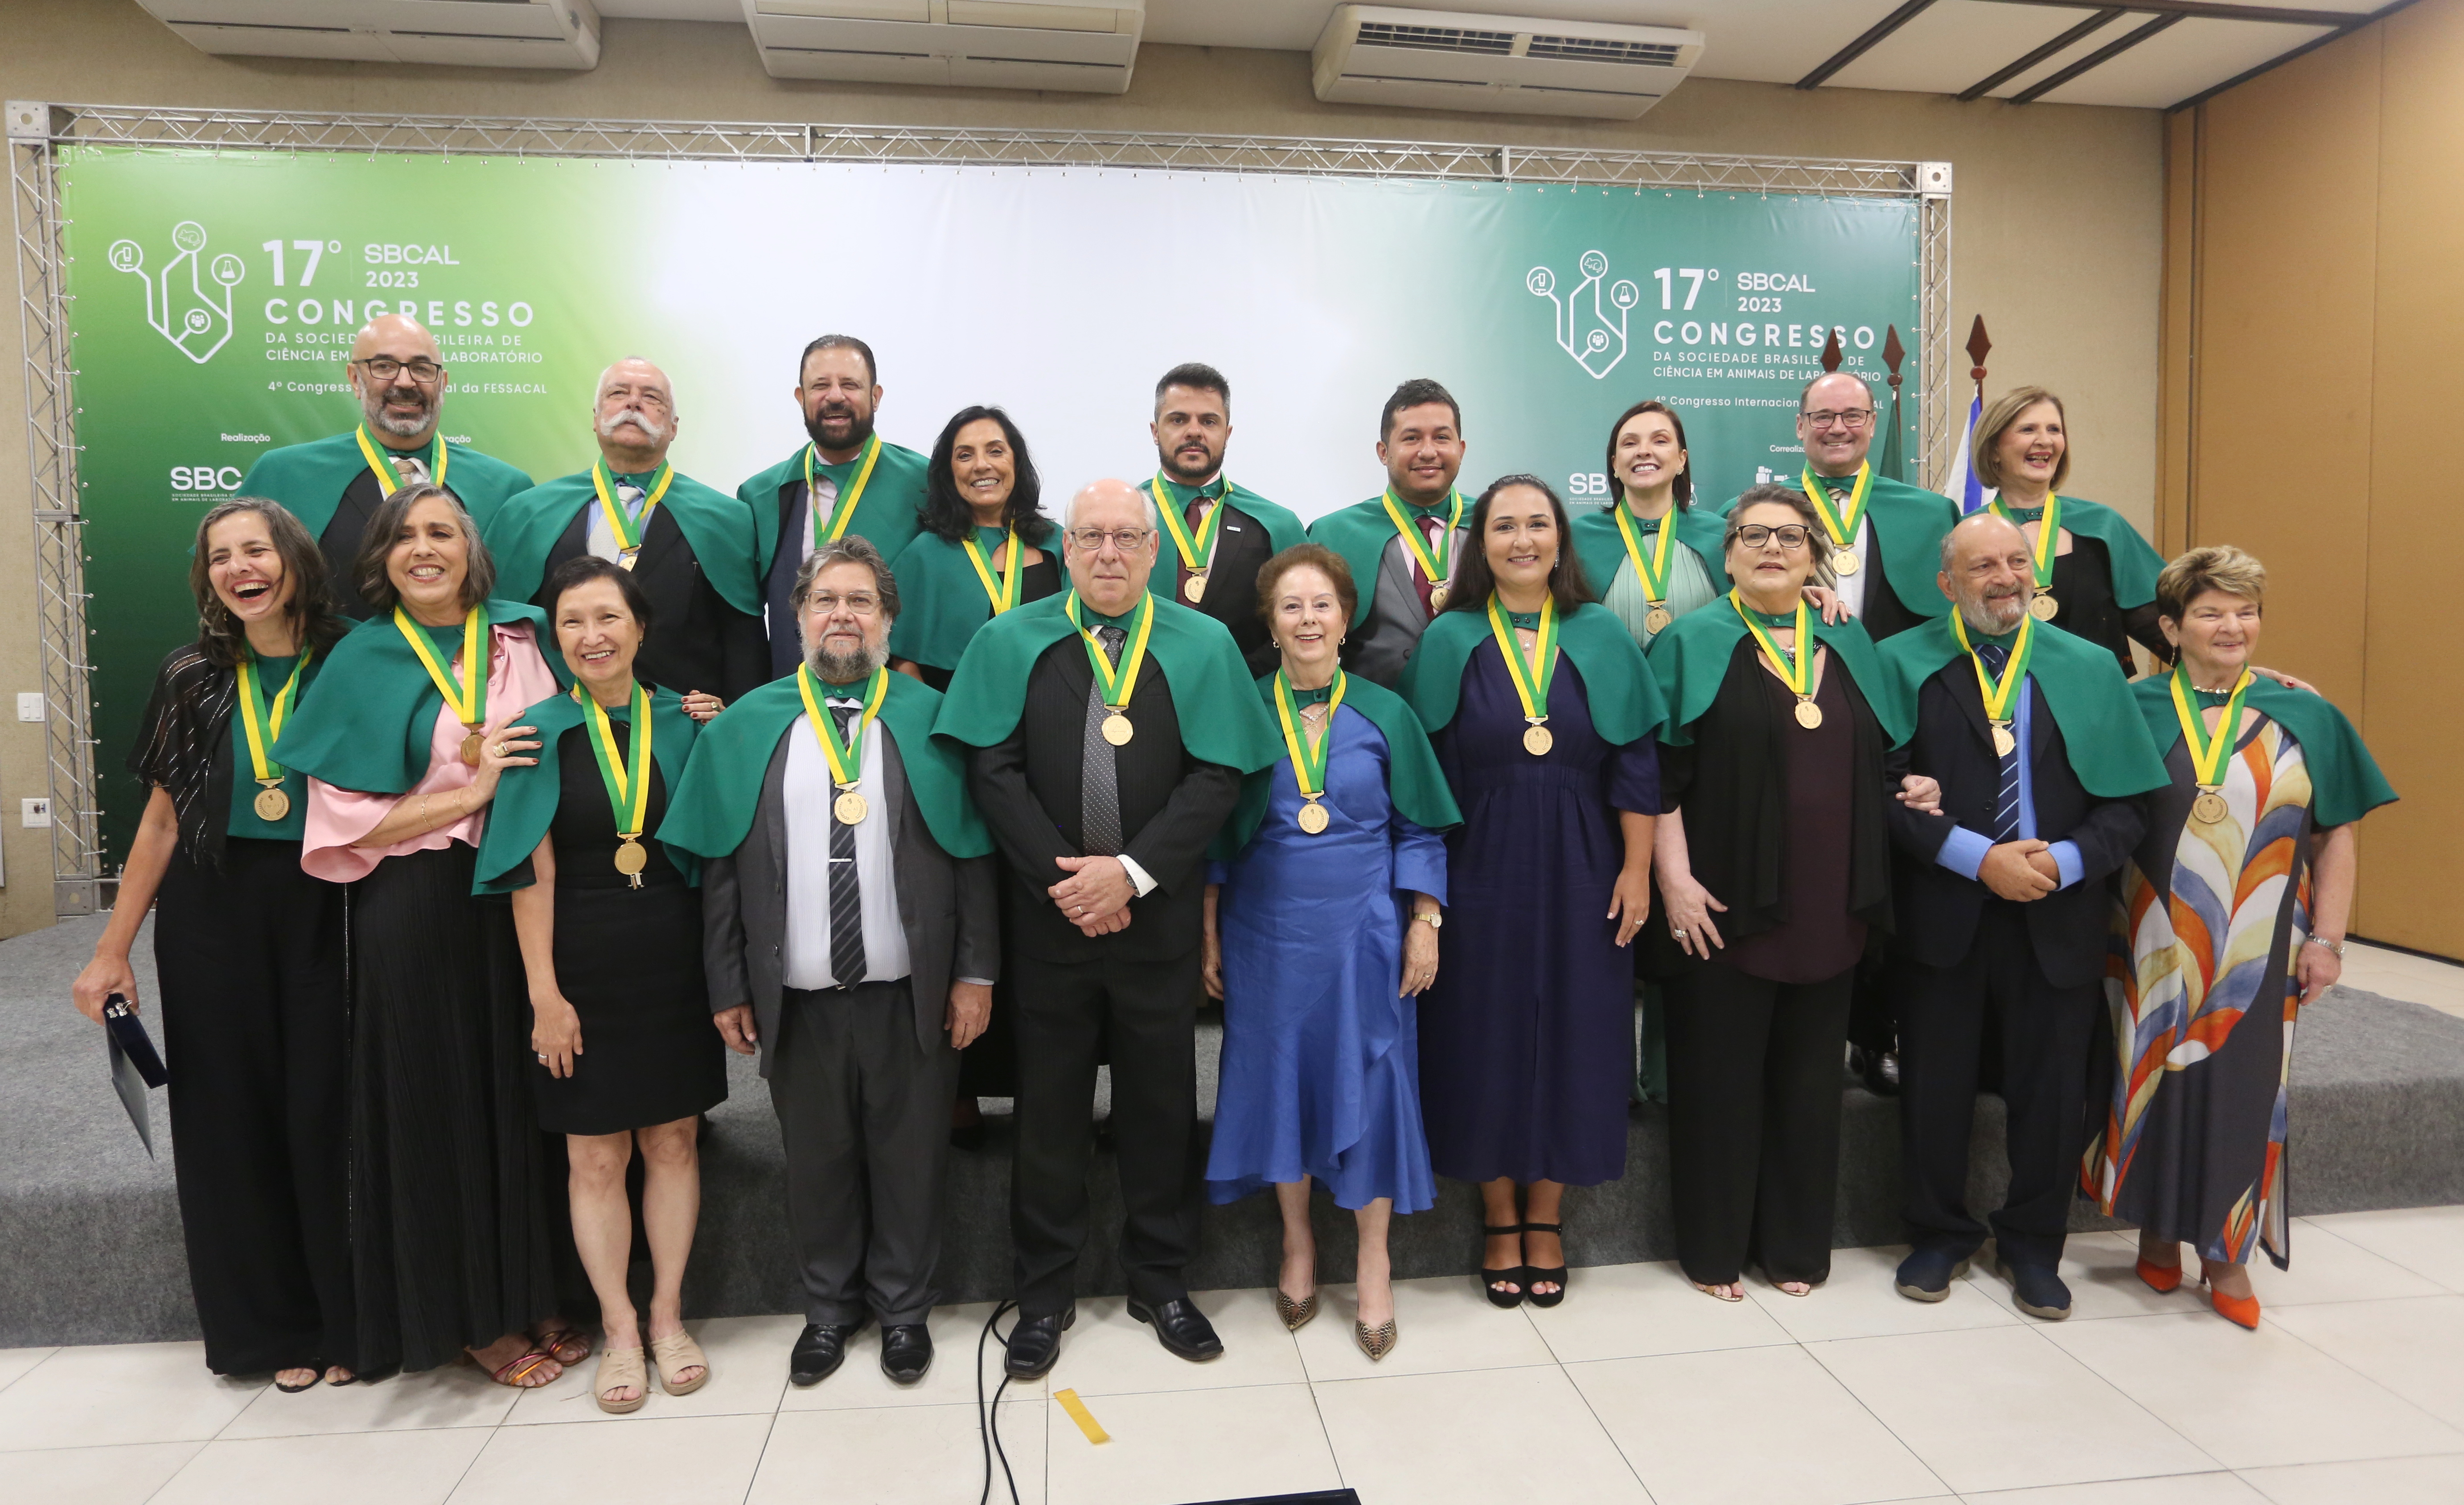 Foto colorida traz 19 pesquisadores, entre homens e mulheres, posicionados em grupo representando os nomeados para a ABCAL.